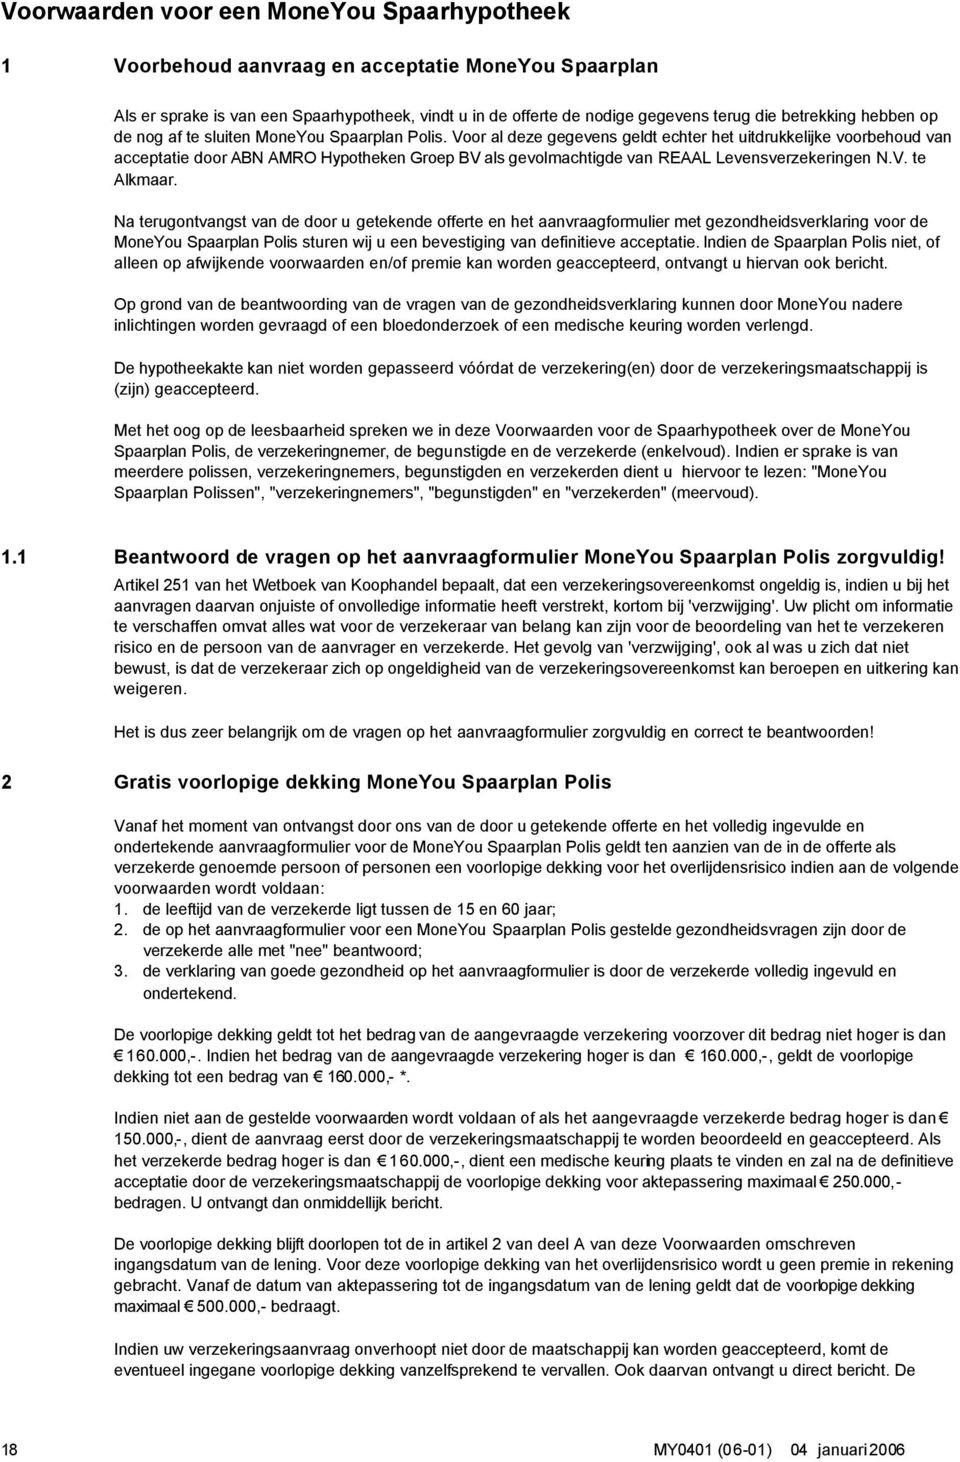 Voor al deze gegevens geldt echter het uitdrukkelijke voorbehoud van acceptatie door ABN AMRO Hypotheken Groep BV als gevolmachtigde van REAAL Levensverzekeringen N.V. te Alkmaar.